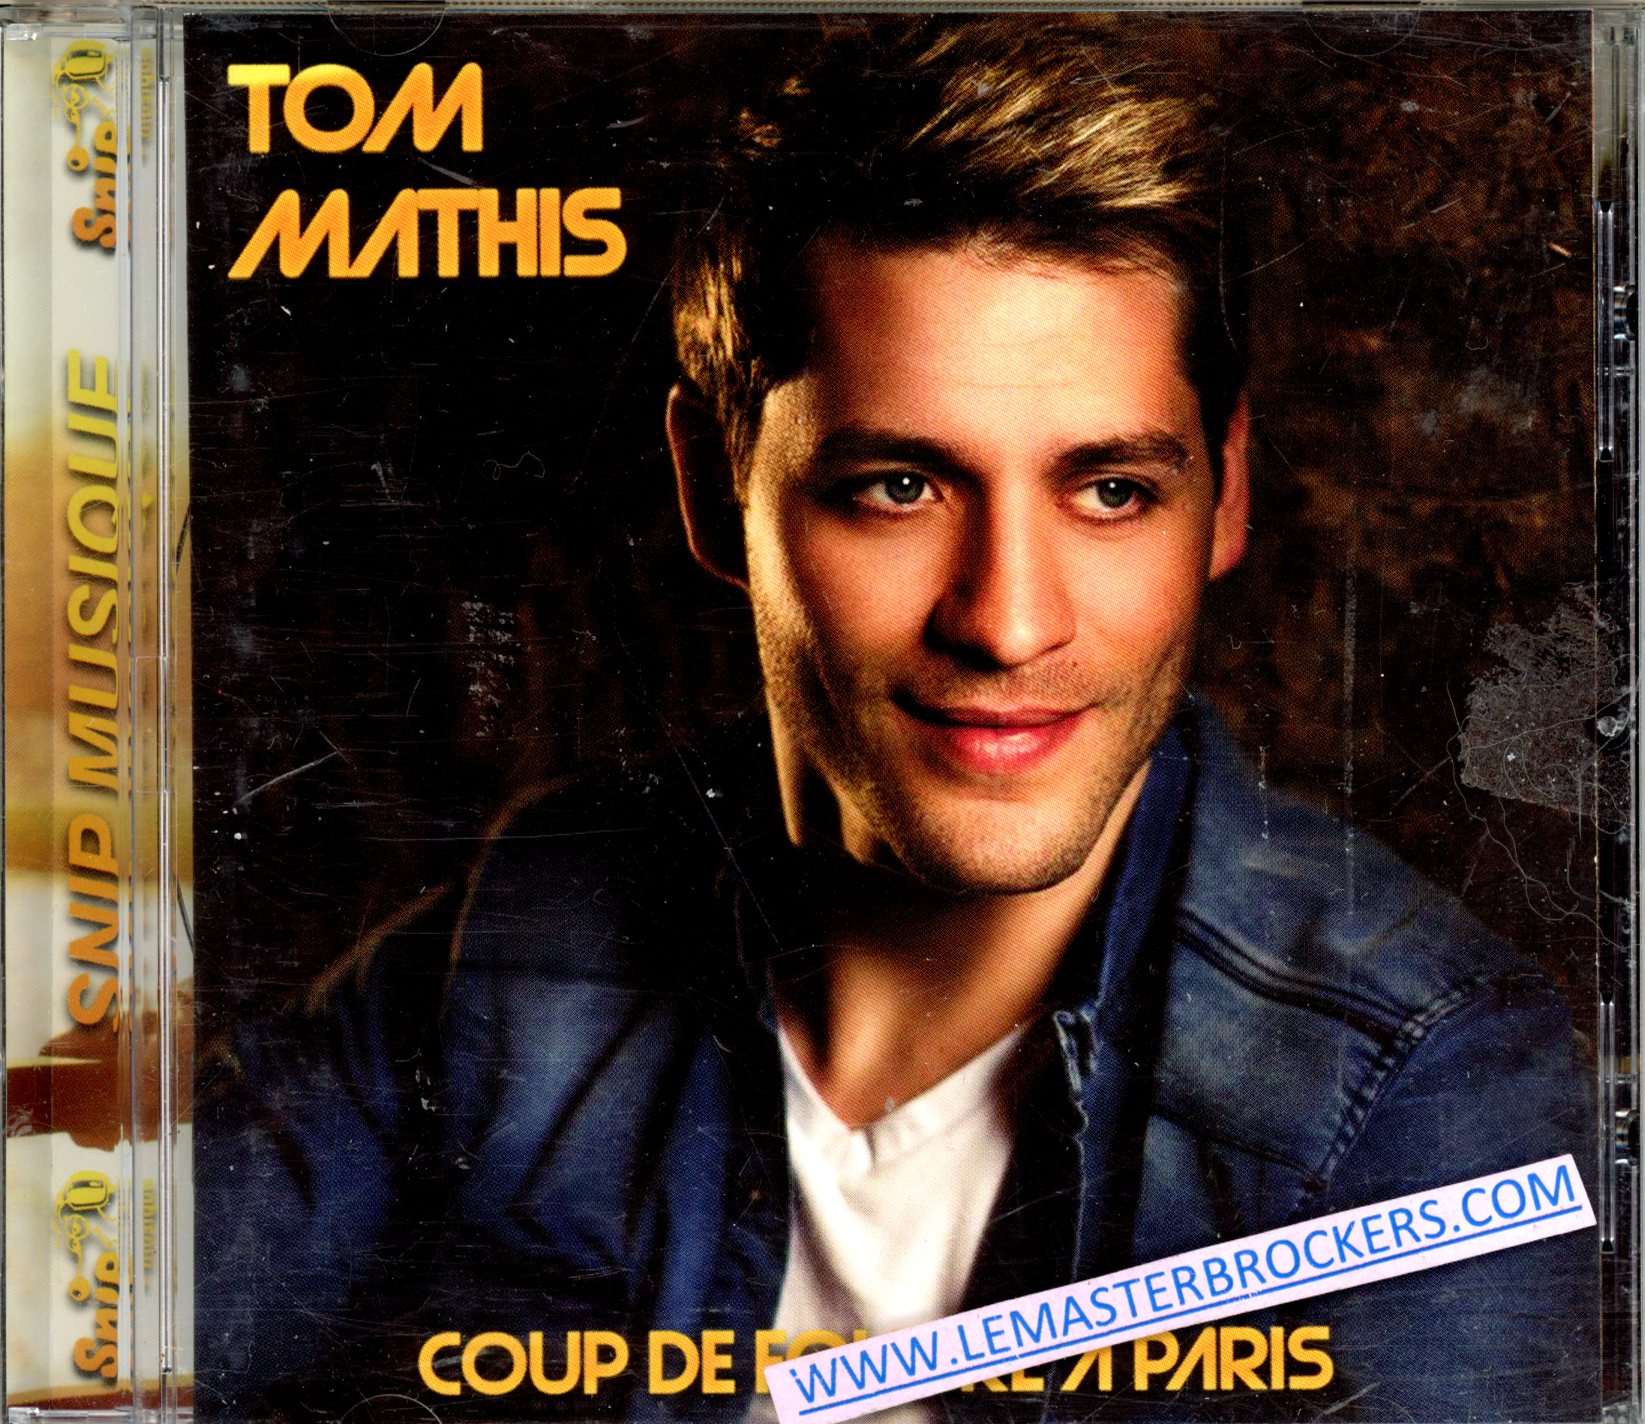 TOM MATHIS COUP DE FOUDRE A PARIS - 3760061145481